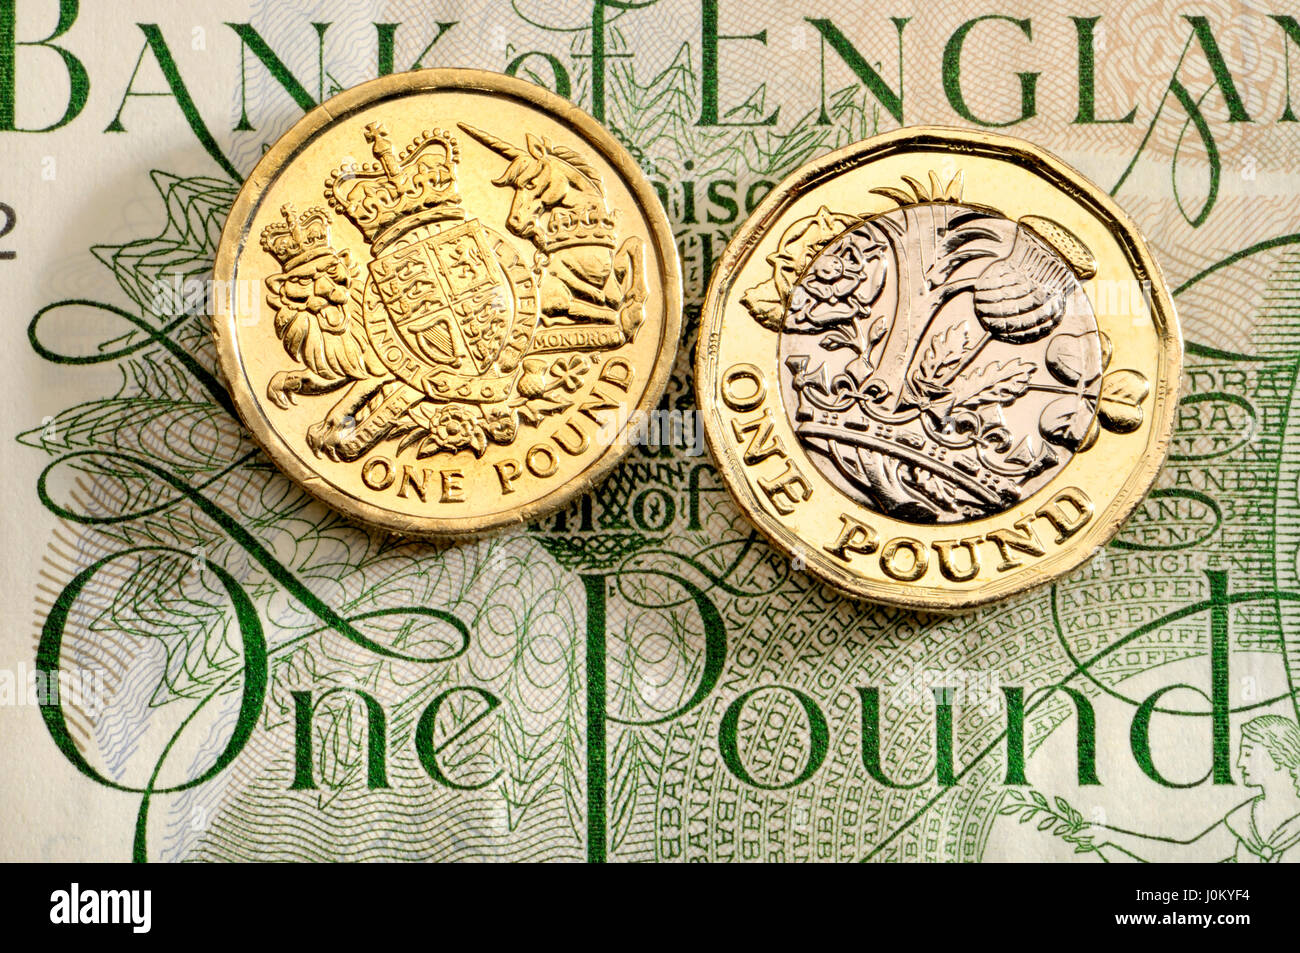 British pound Coins - douze faces 2017 bimétallique de presse (en date du) 2016 avec les anciens design, sur un vieux livre Banque D'Images